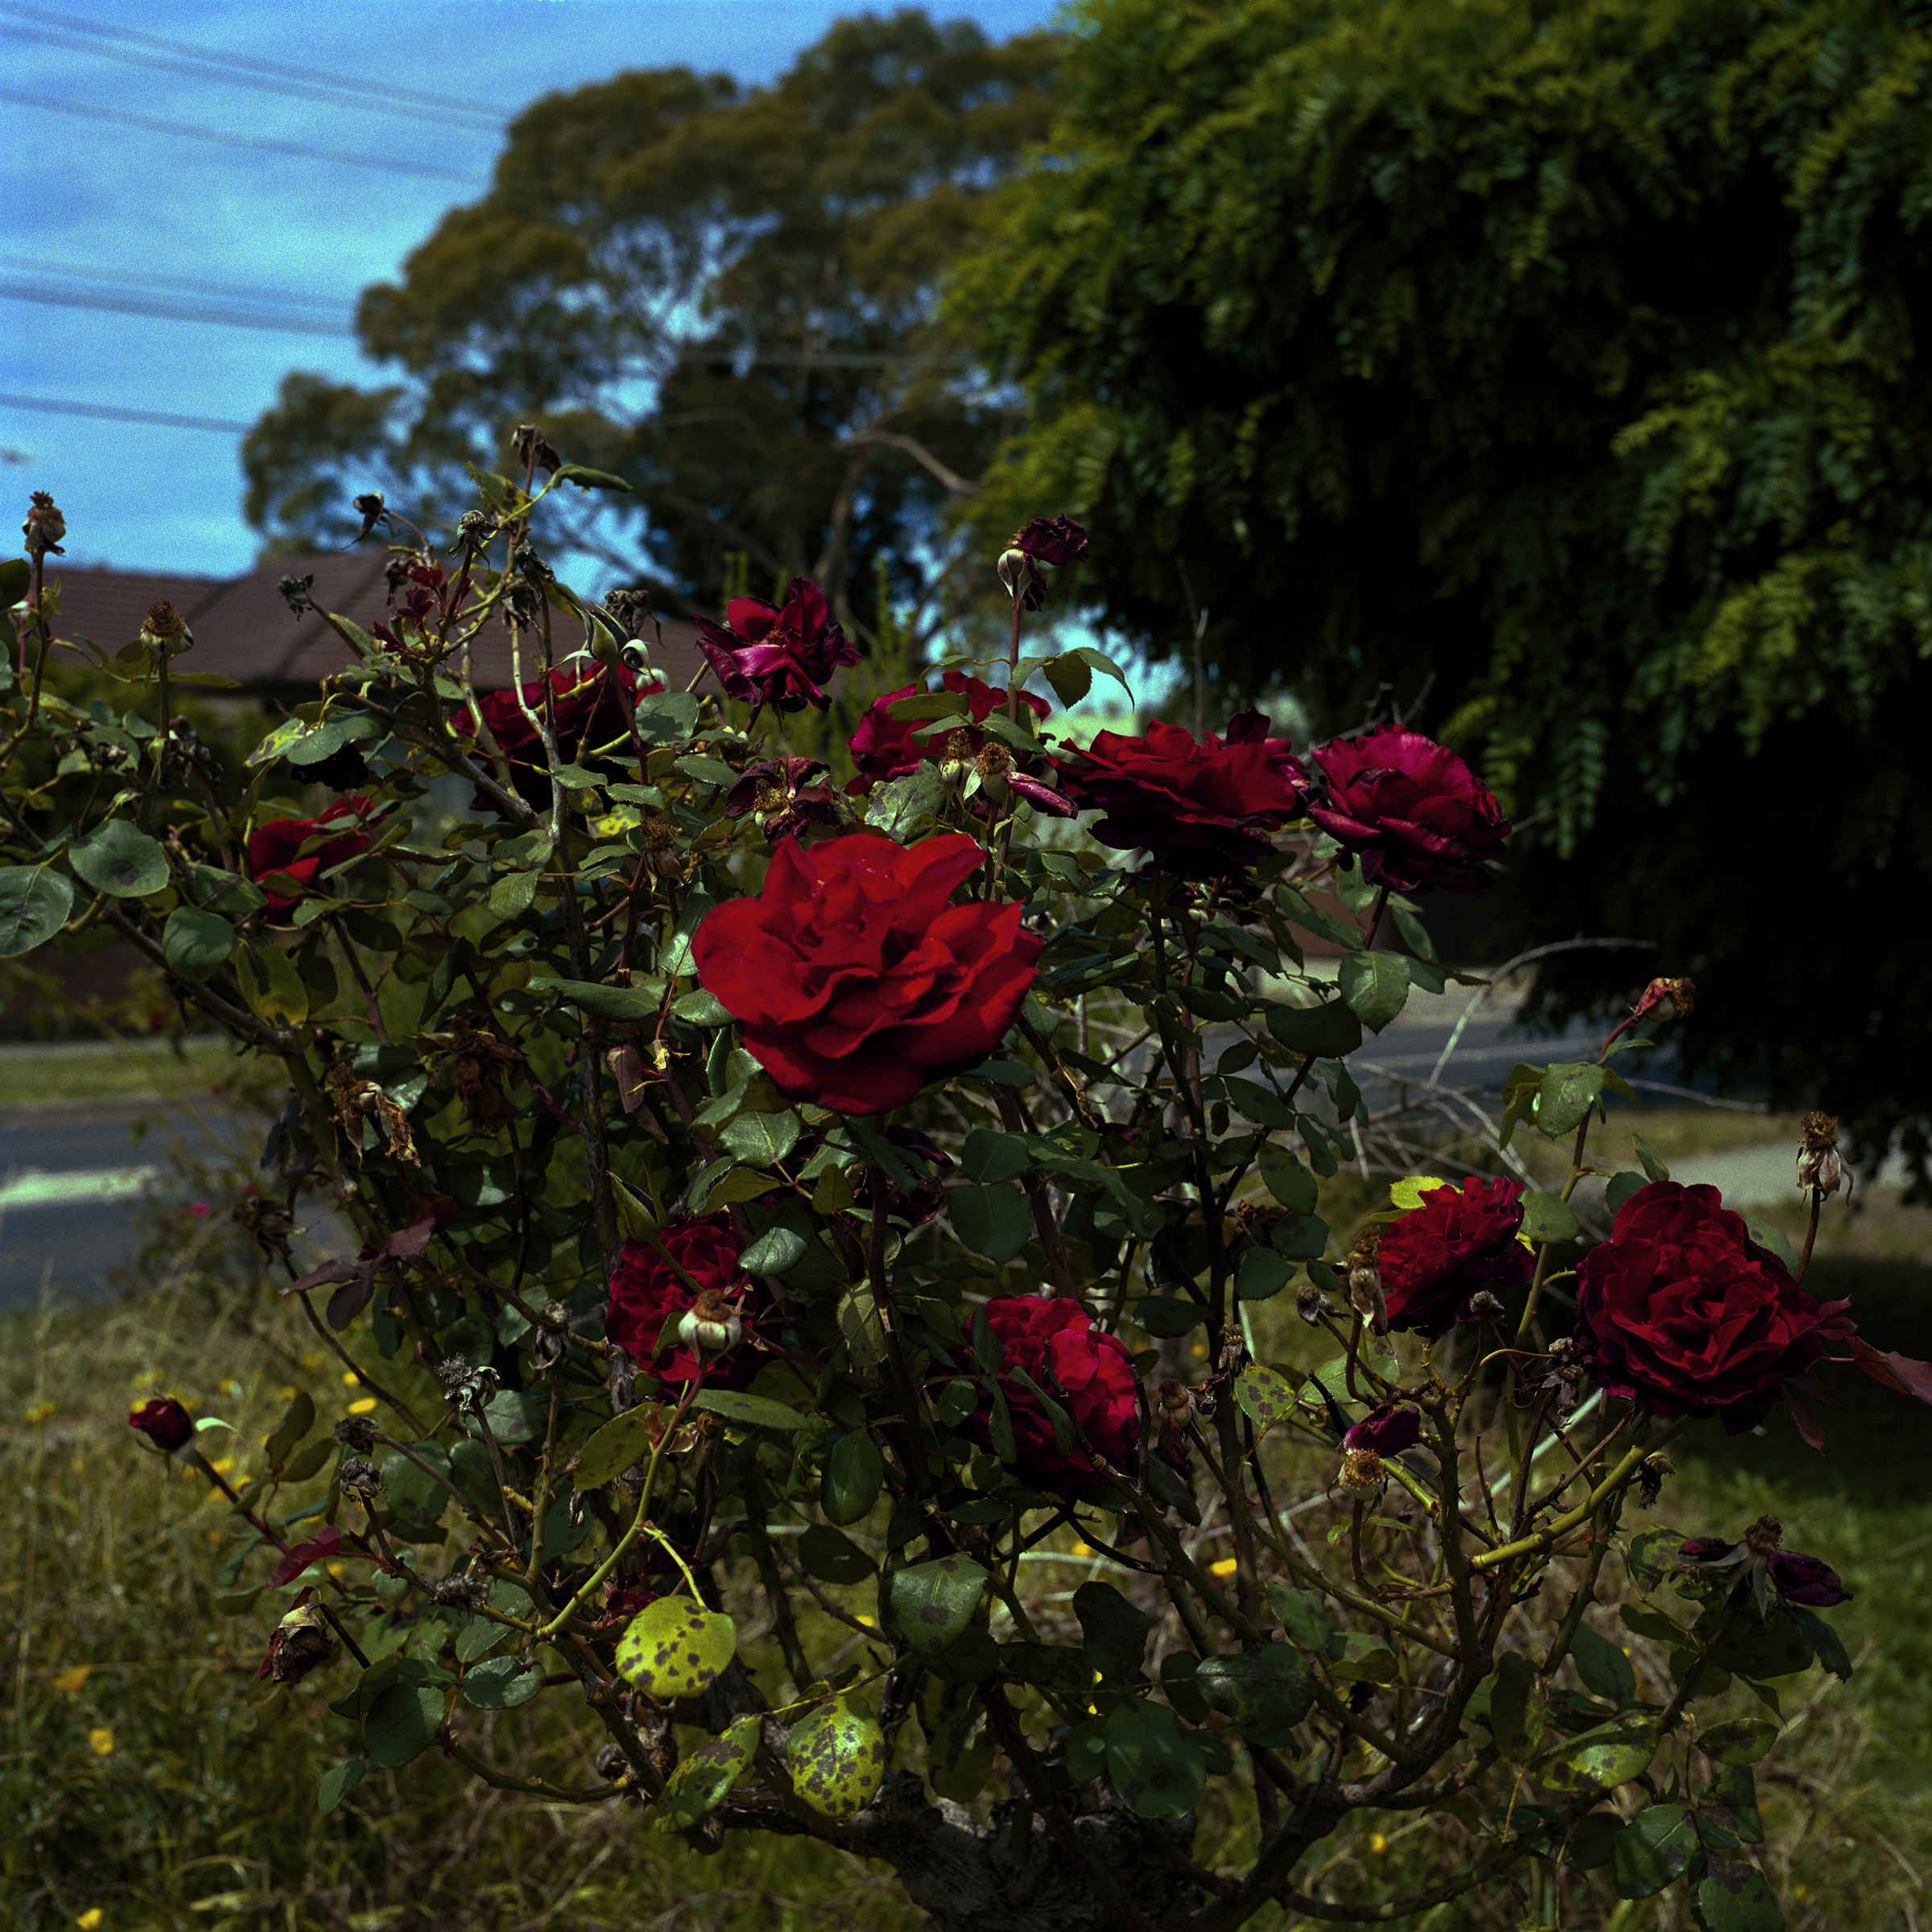 Diseased Roses (2010)